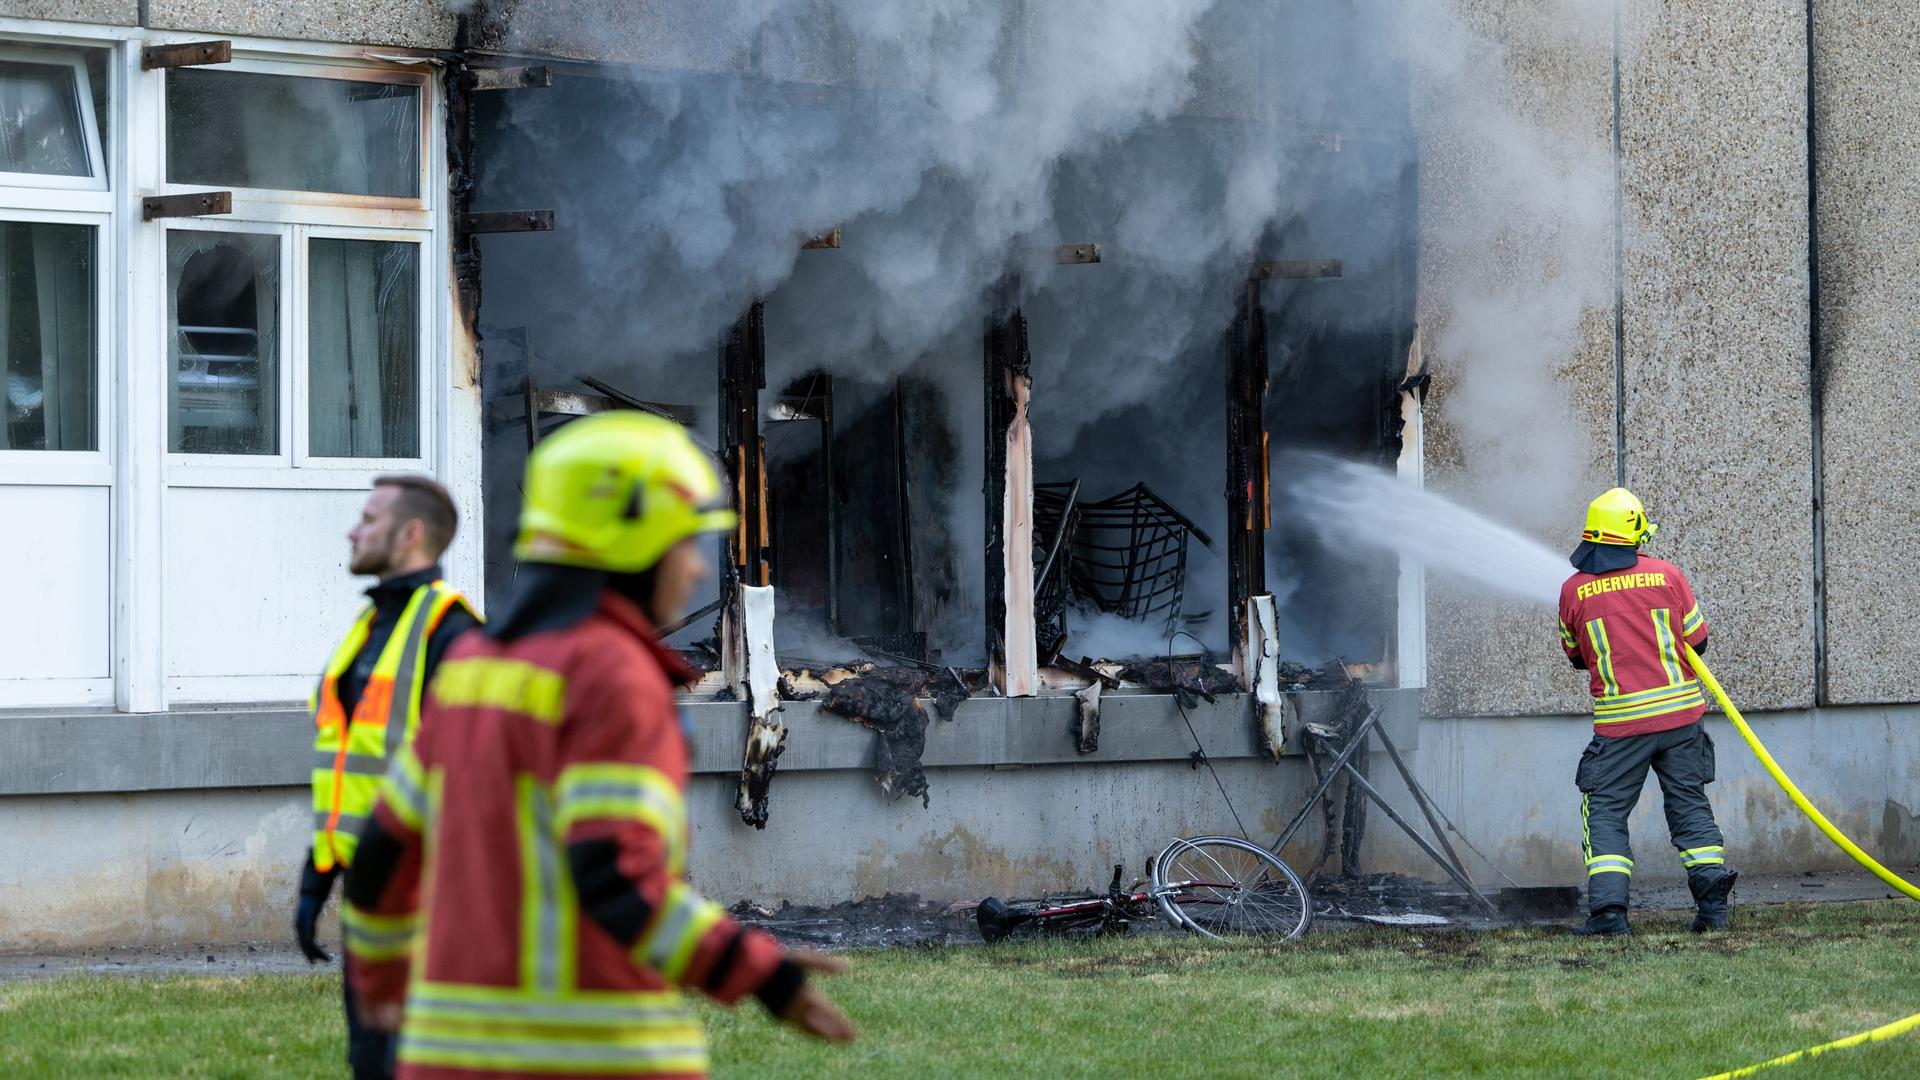 Apolda in Thüringen - Bundesinnenministerin Faeser: Ermittlungen nach Brand in Flüchtlingsunterkunft sind im Gange